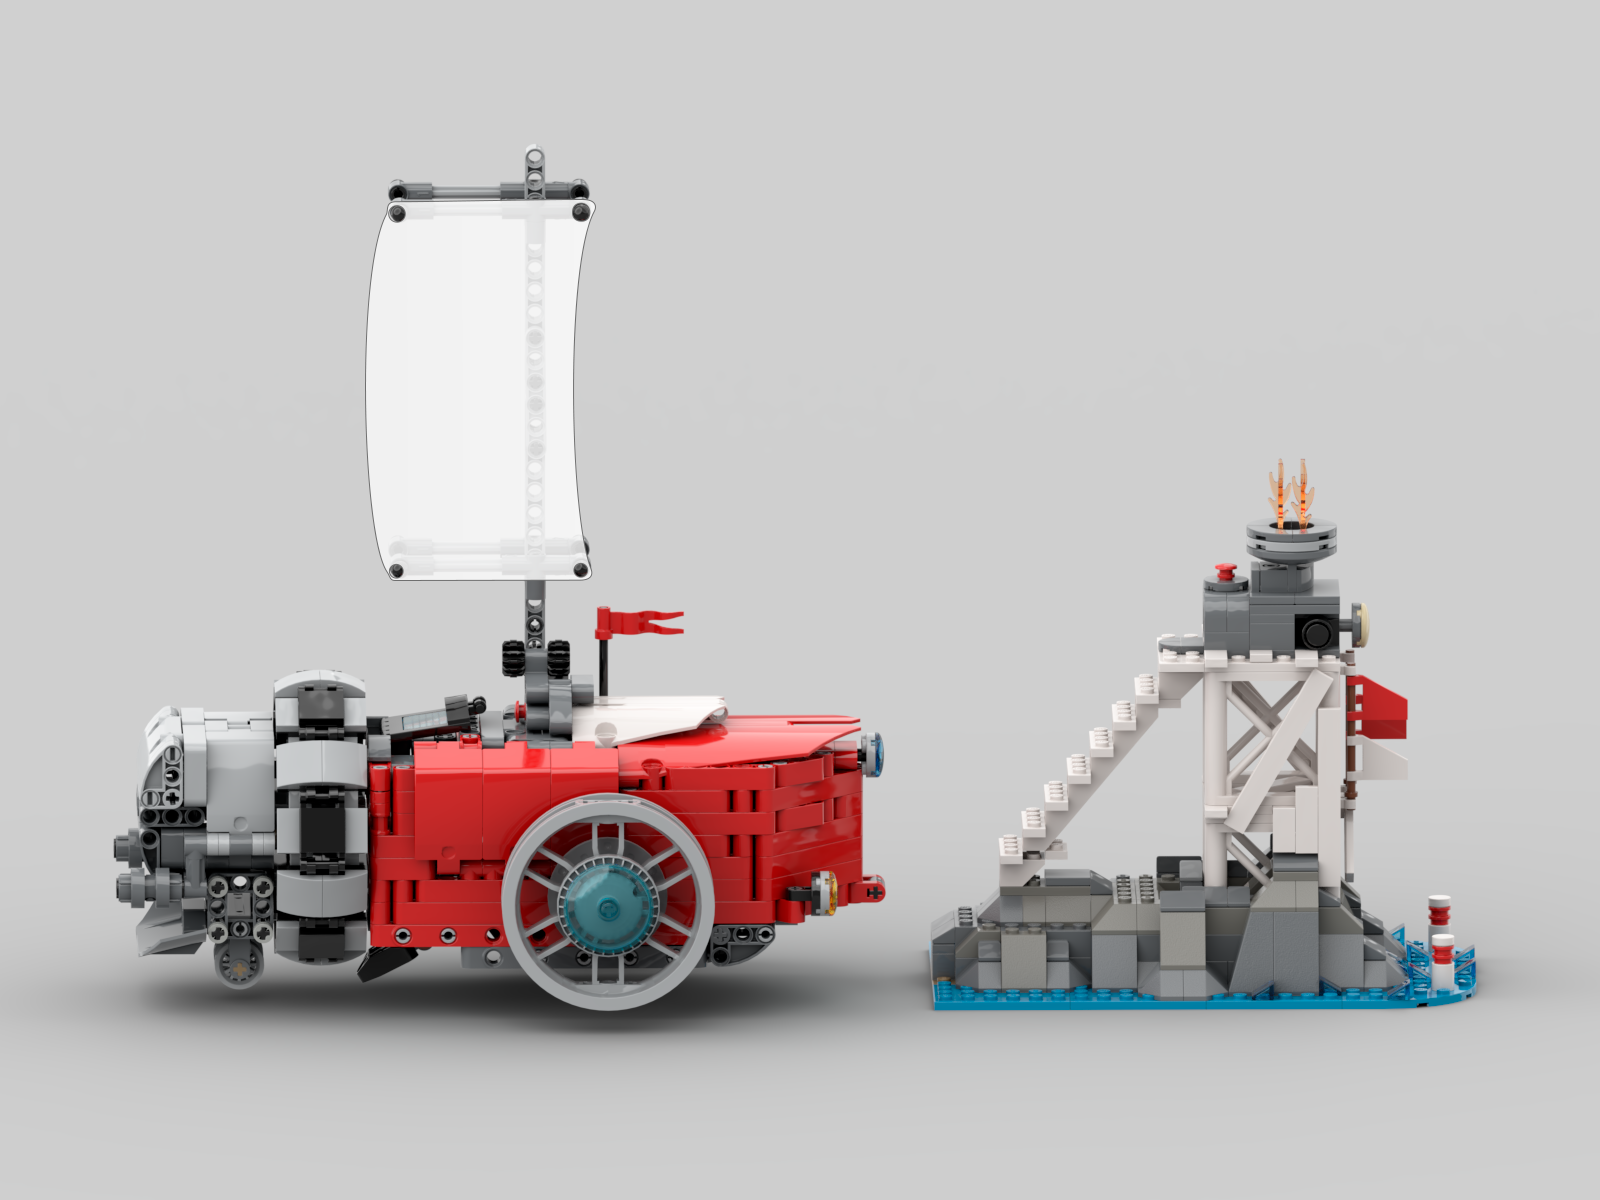 Выжмите максимум из своих конструкторов LEGO!